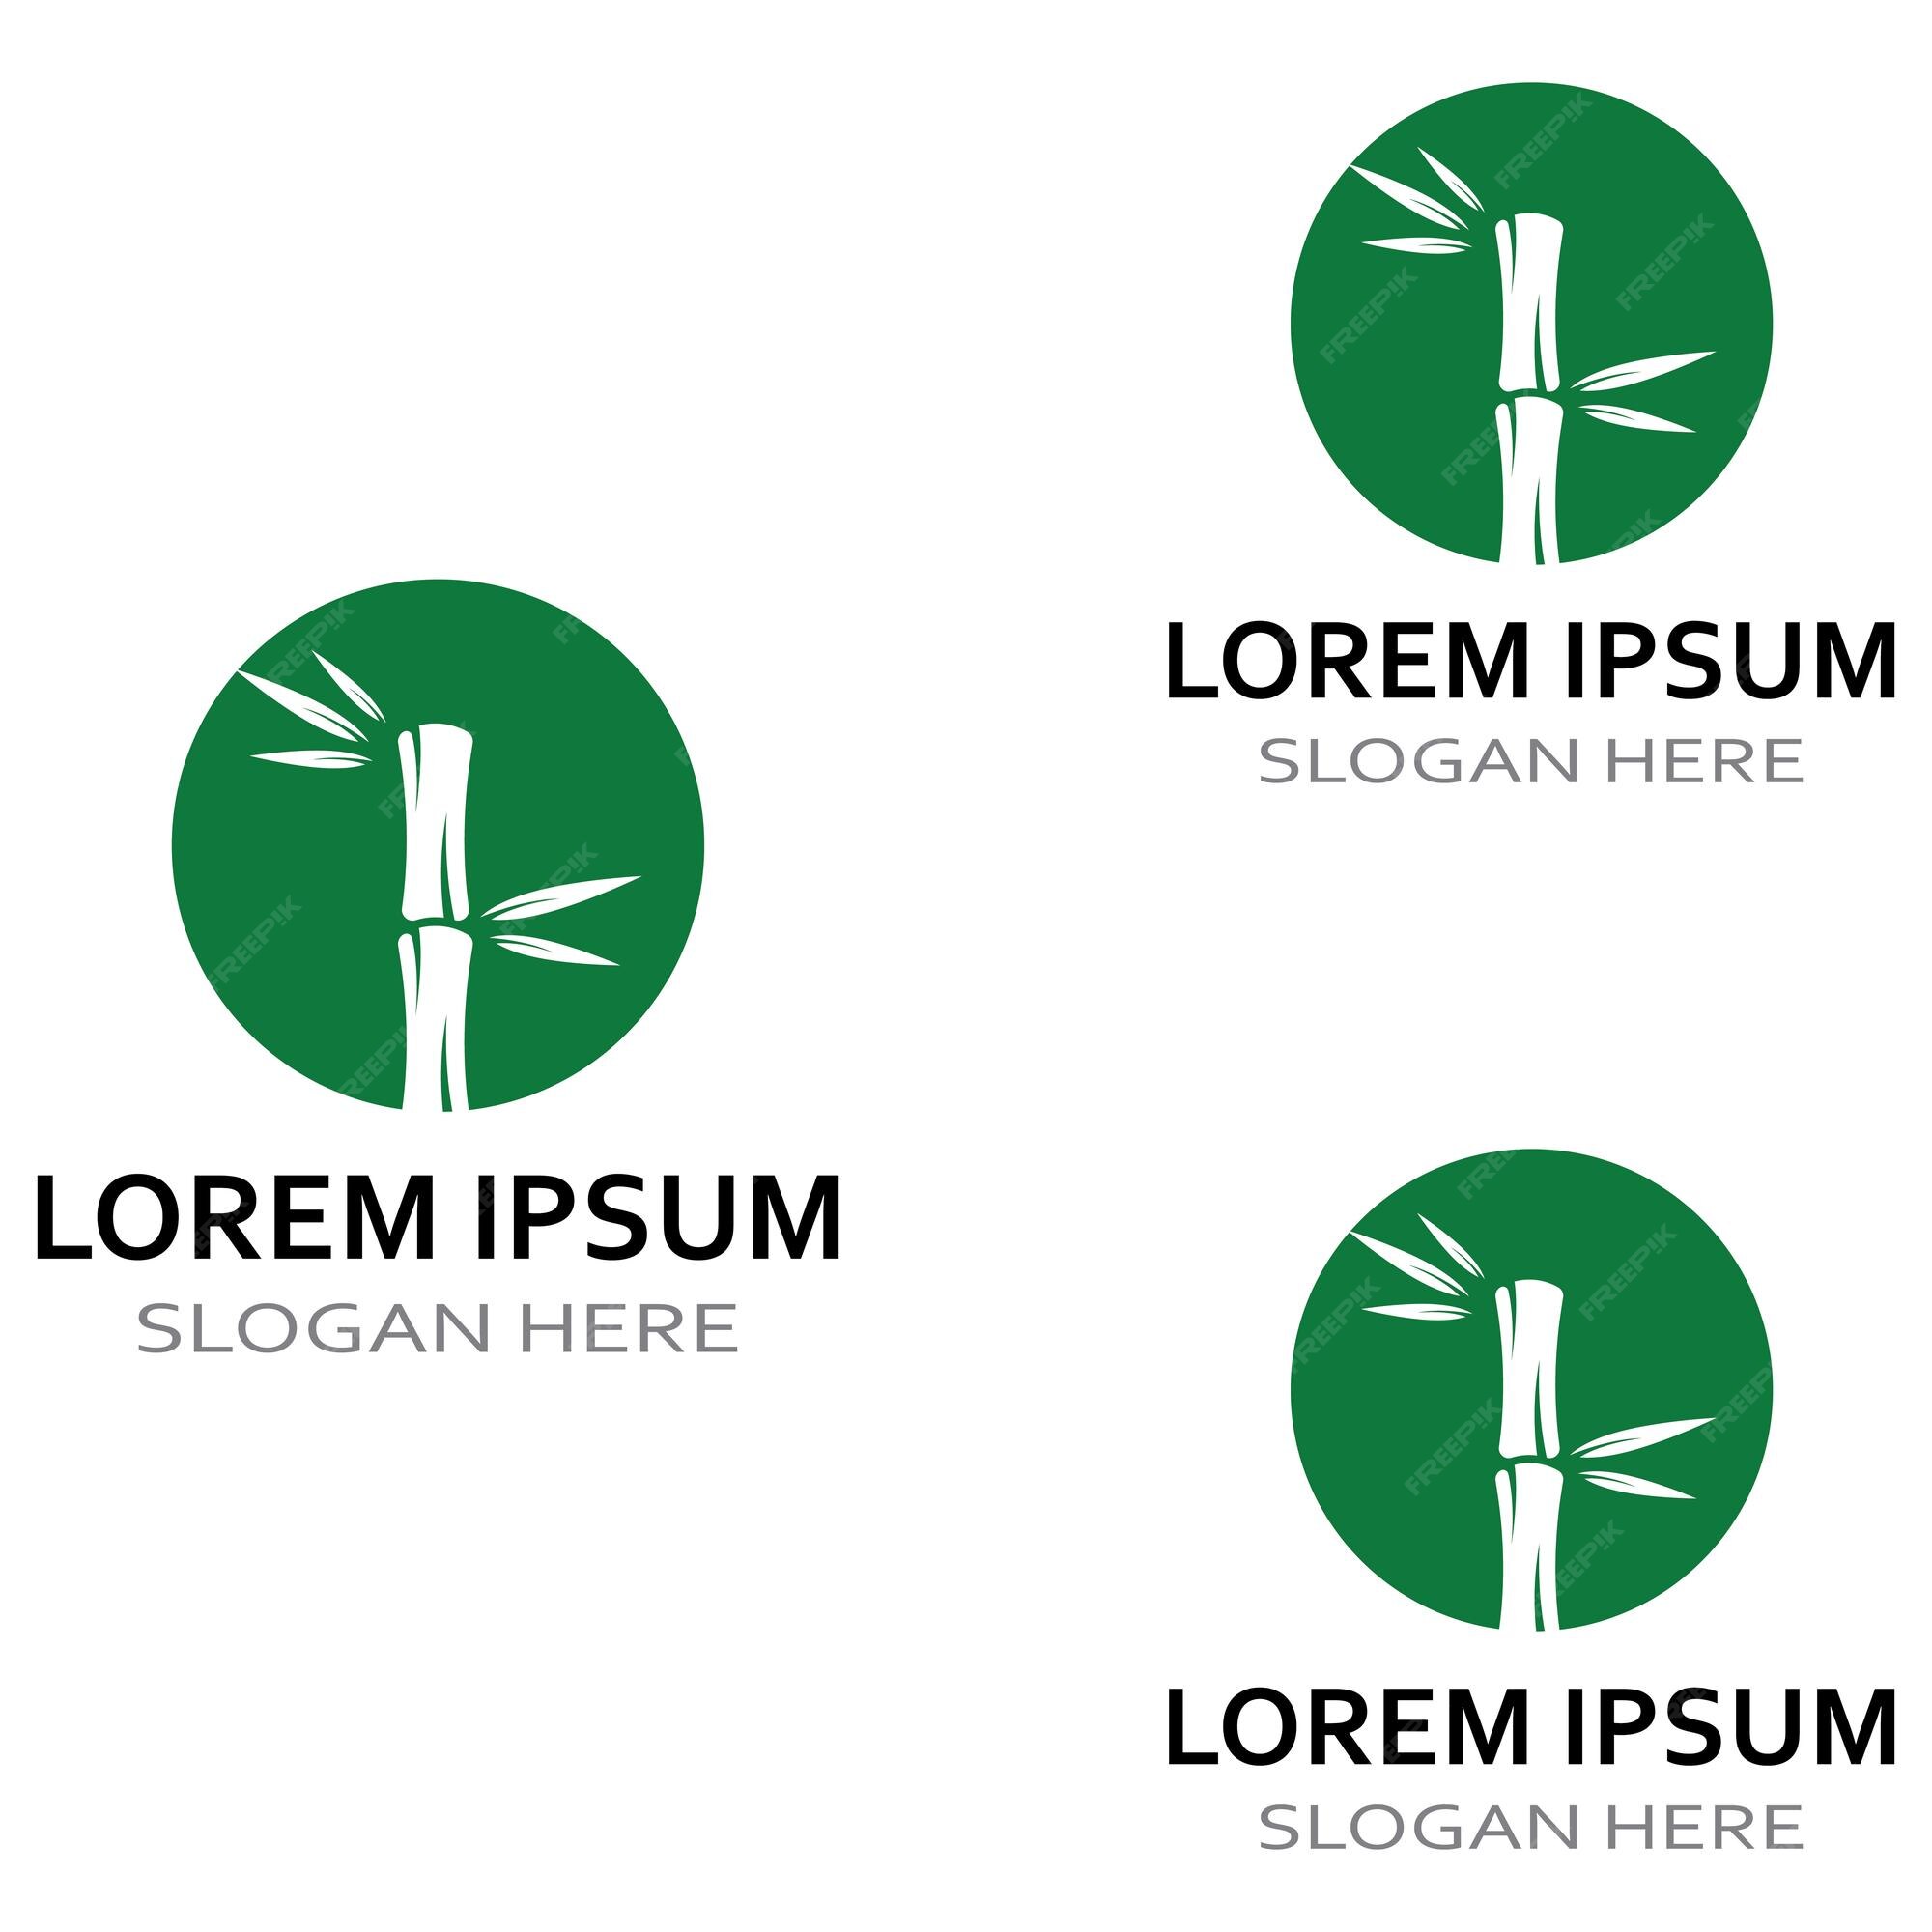 Logotipo de uma planta de bambu ou um tipo de planta oca usando um design  de conceito de vetor de negócios de ilustração moderna